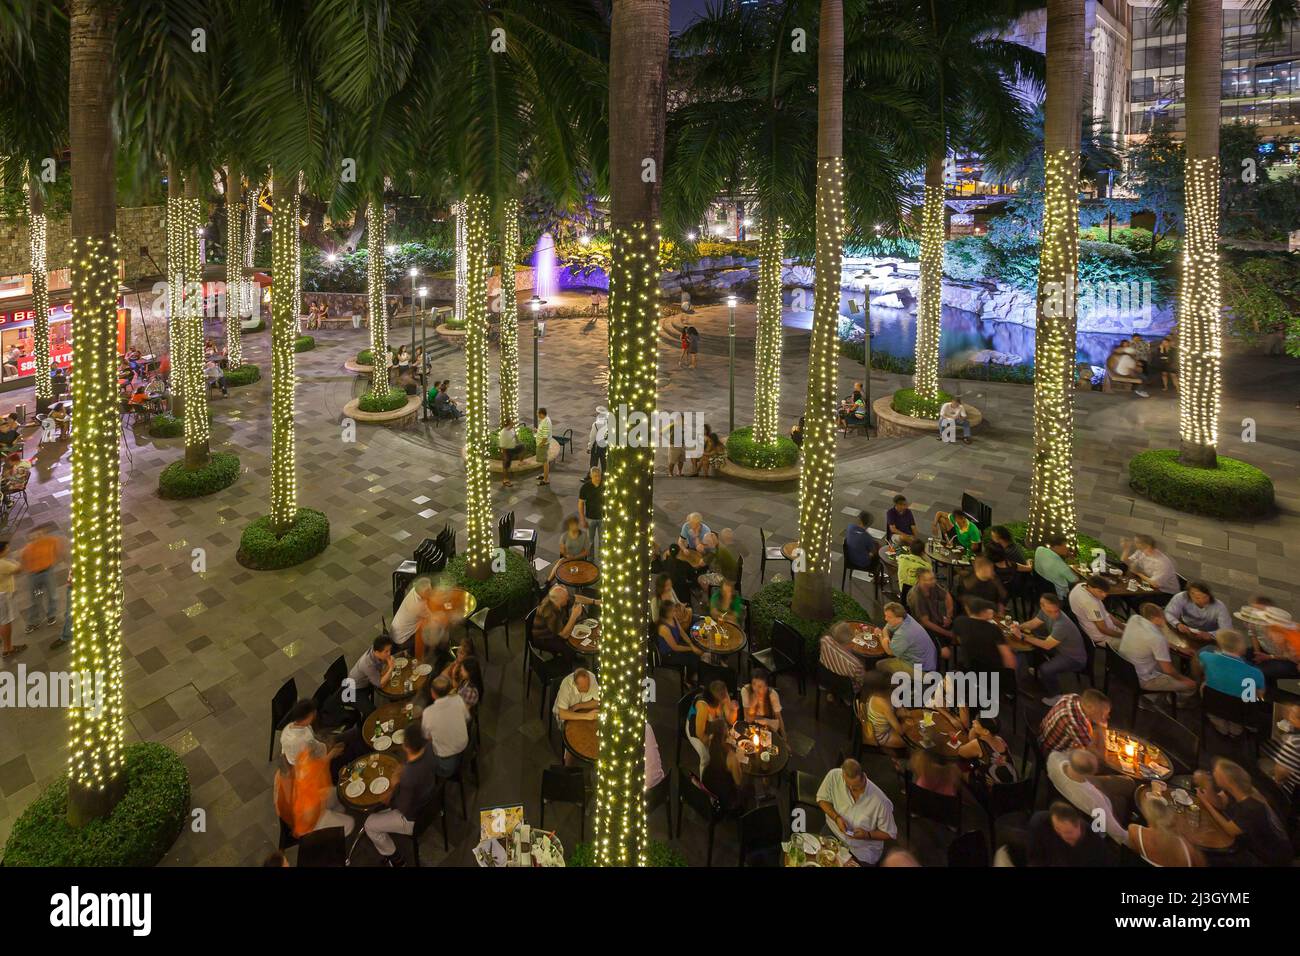 Filippine, Metro Manila, Makati District, Greenbelt Mall, bar con terrazza e alberi di cocco decorati con luci tinsel Foto Stock